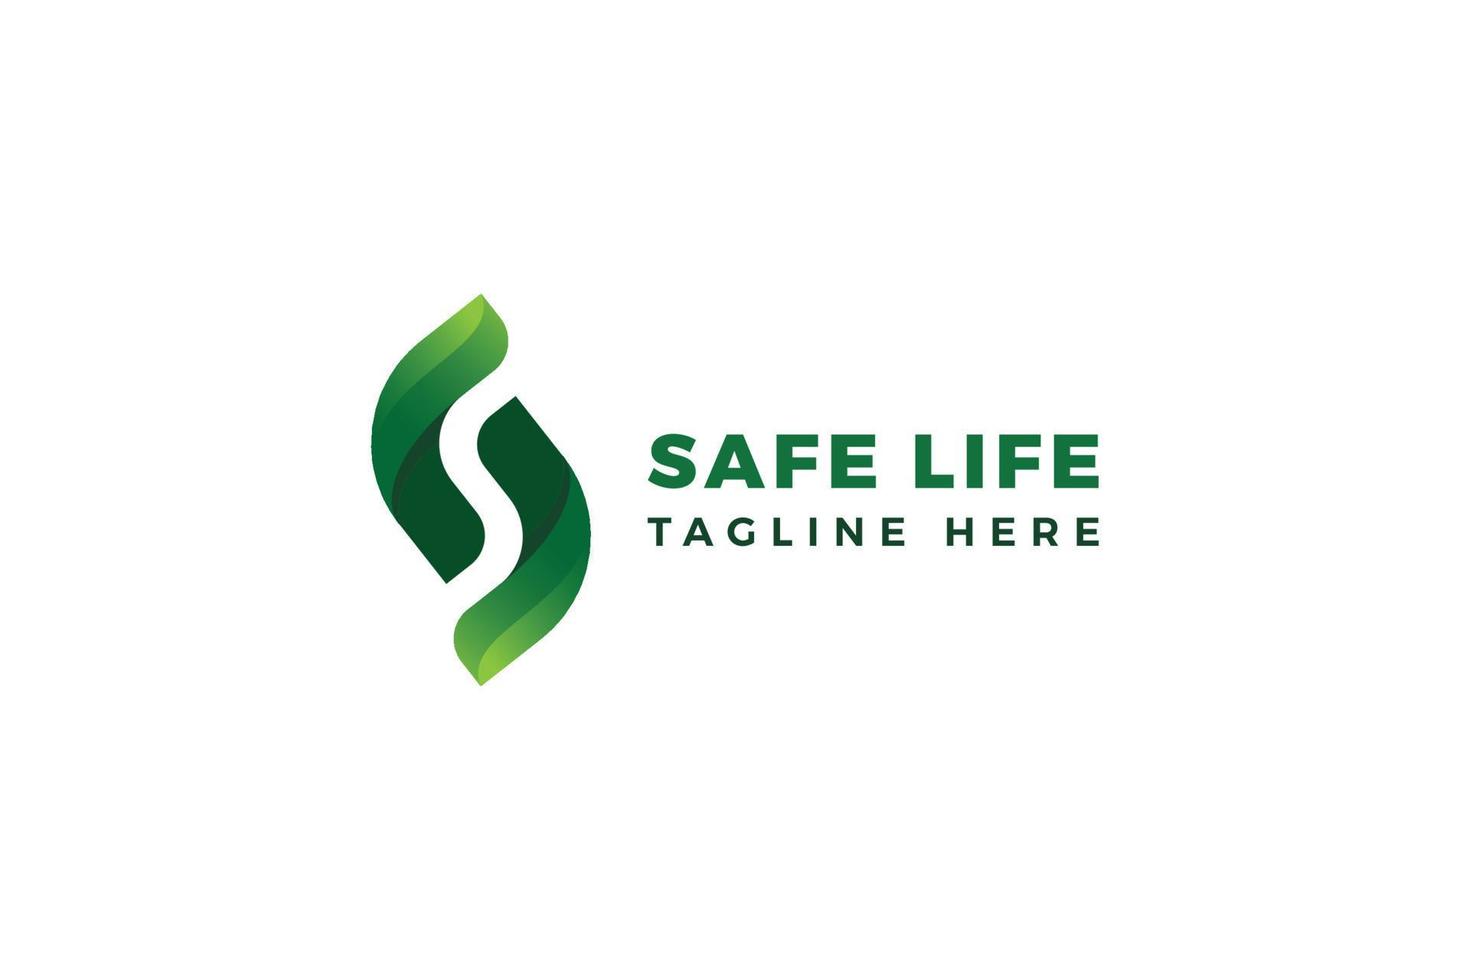 buchstabe s grüne farbe 3d safe life logo vektor